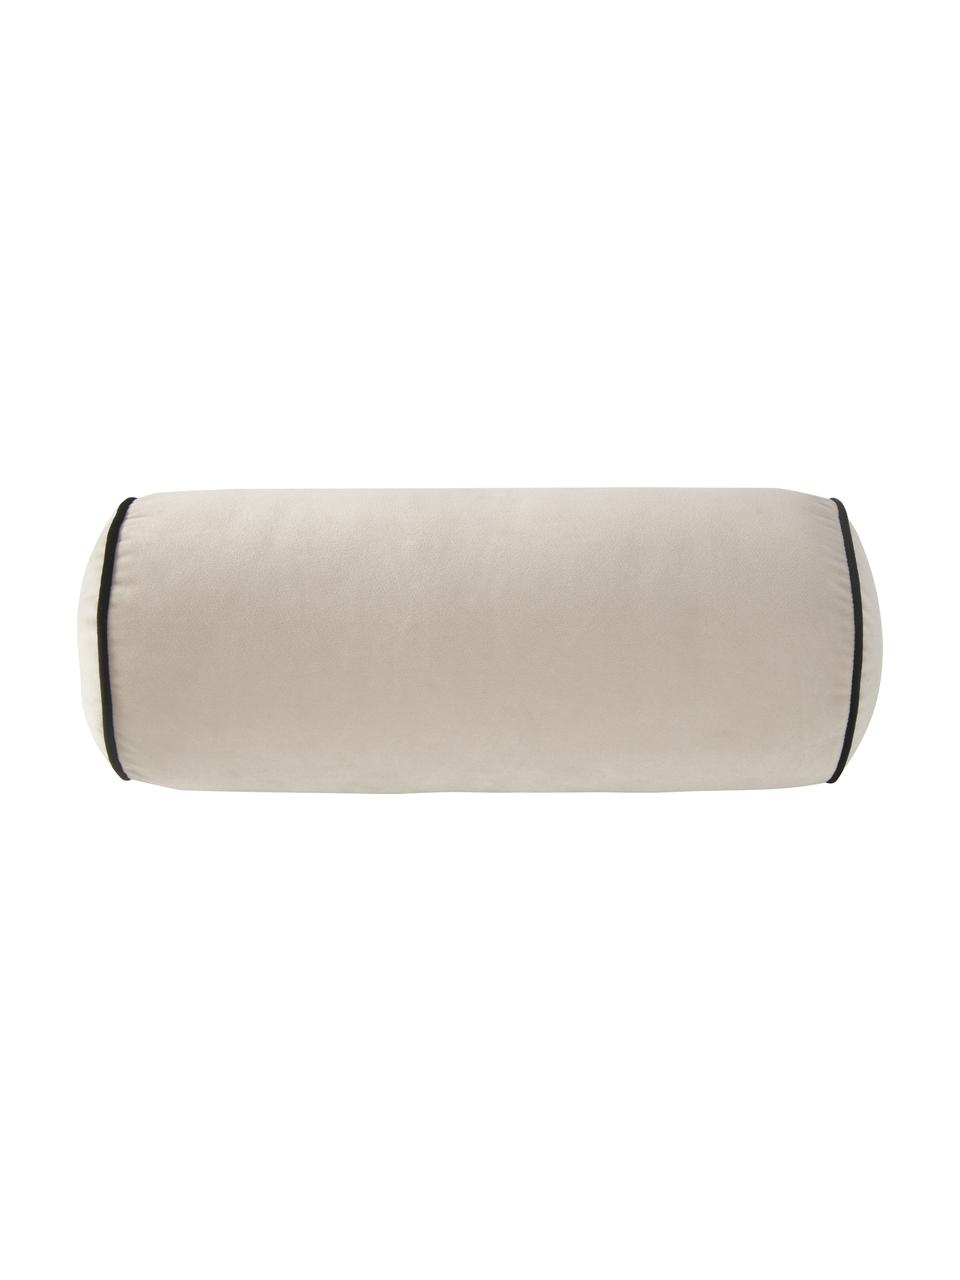 Cuscino divano rullo in velluto beige chiaro Monet, Rivestimento: 100% velluto di poliester, Beige, Ø 18 x Lung. 45 cm